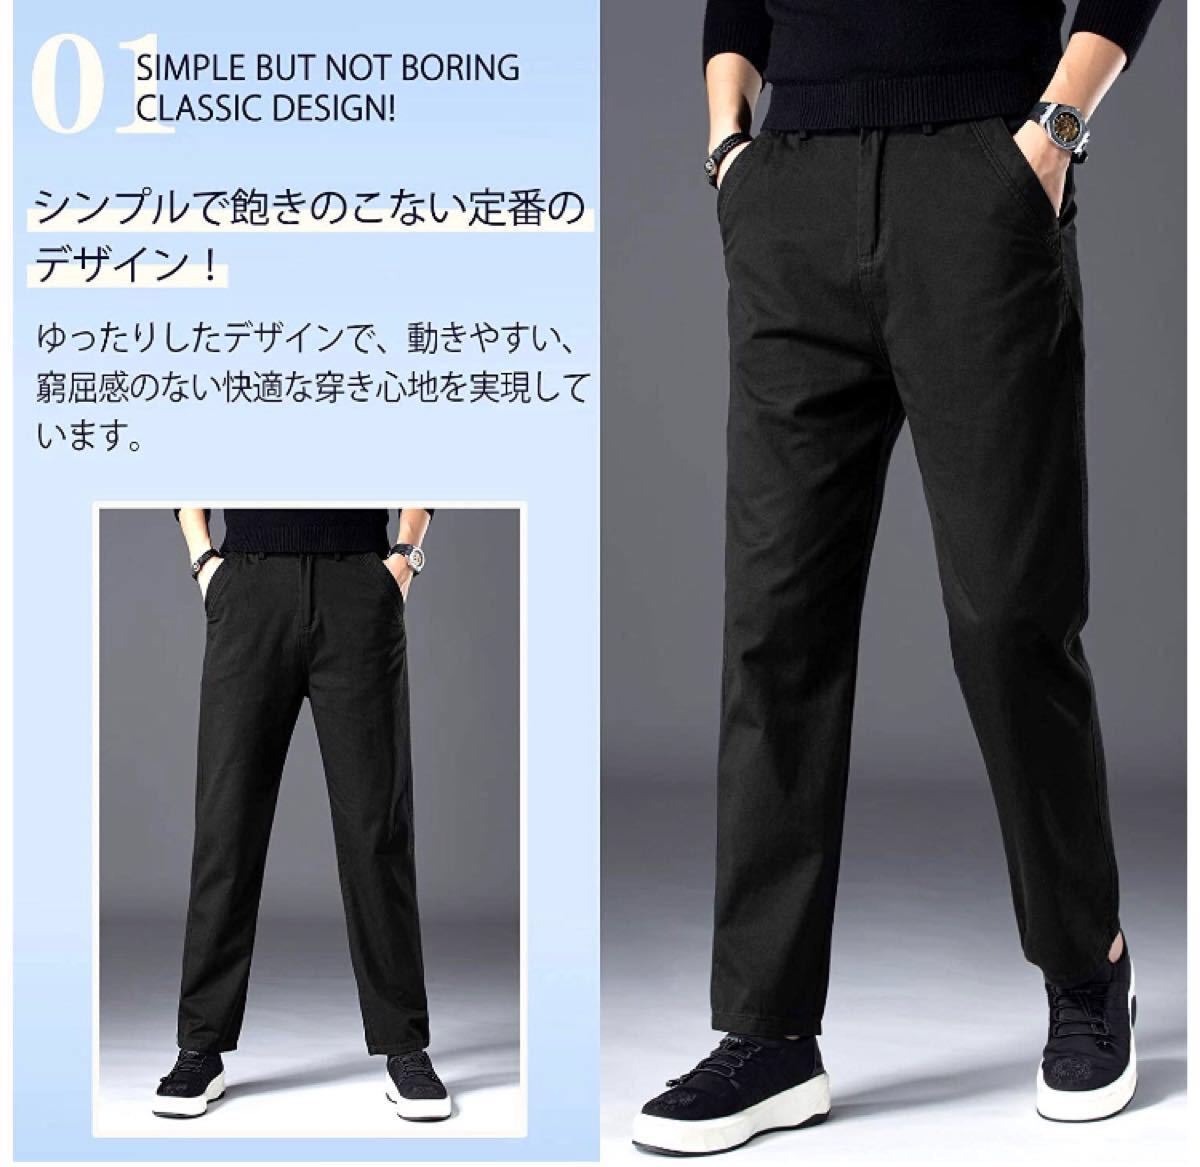 【送料無料】チノパン メンズ ズボン パンツ ワイドパンツ